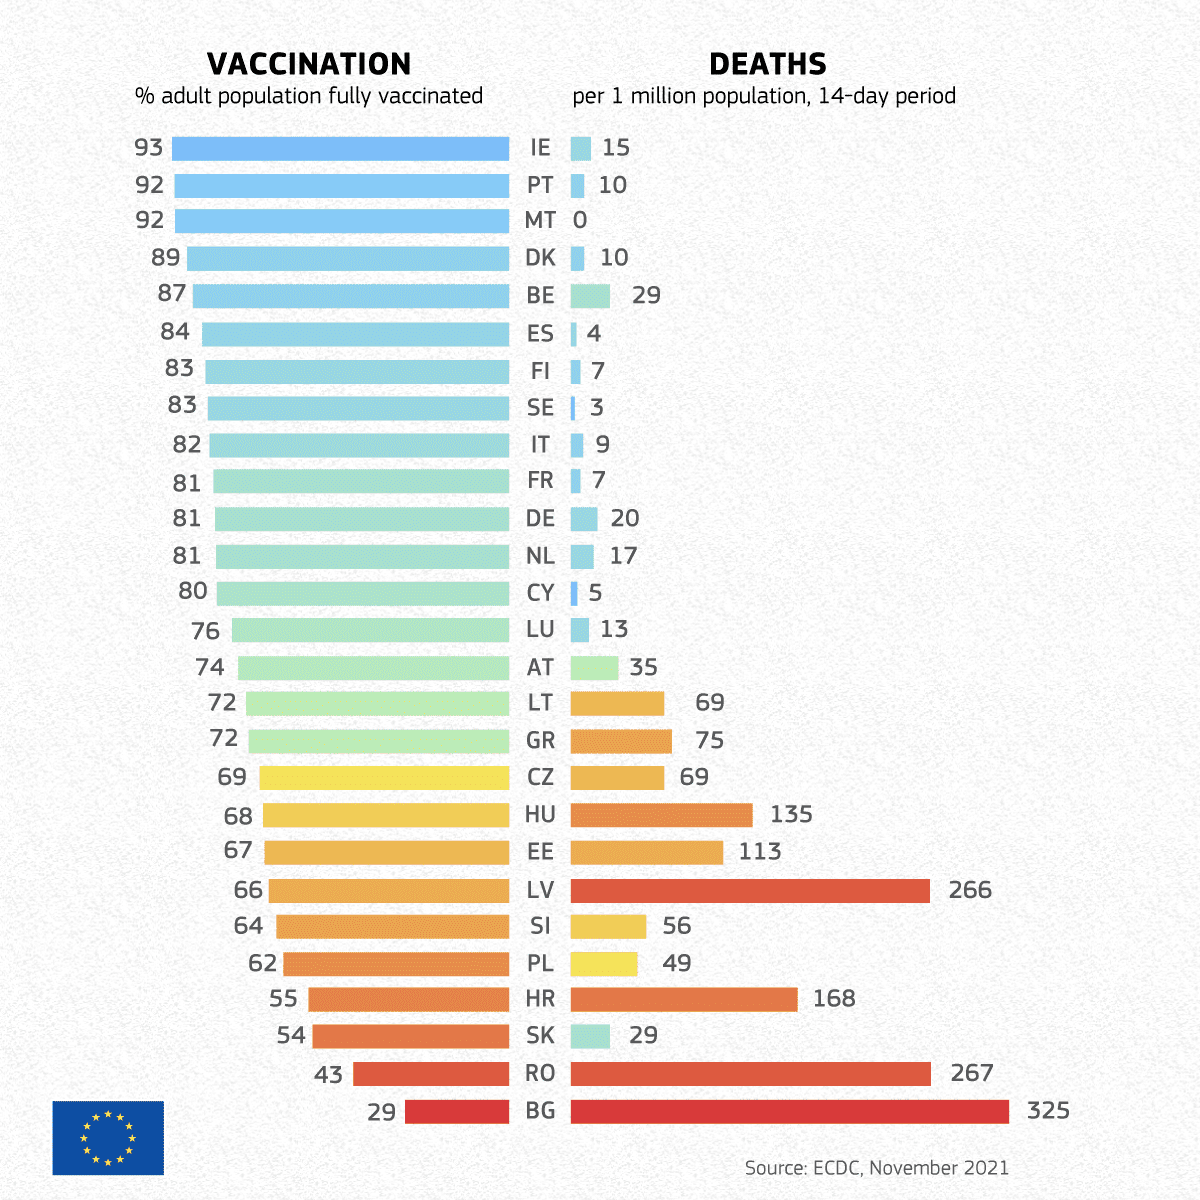 Wykres przedstawiający statystyki zgonów na milion mieszkańców, a także procent wyszczepienia wśród krajów Unii Europejskiej. Liczba zgonów wzrasta wraz ze spadkiem poziomu wyszczepienia.